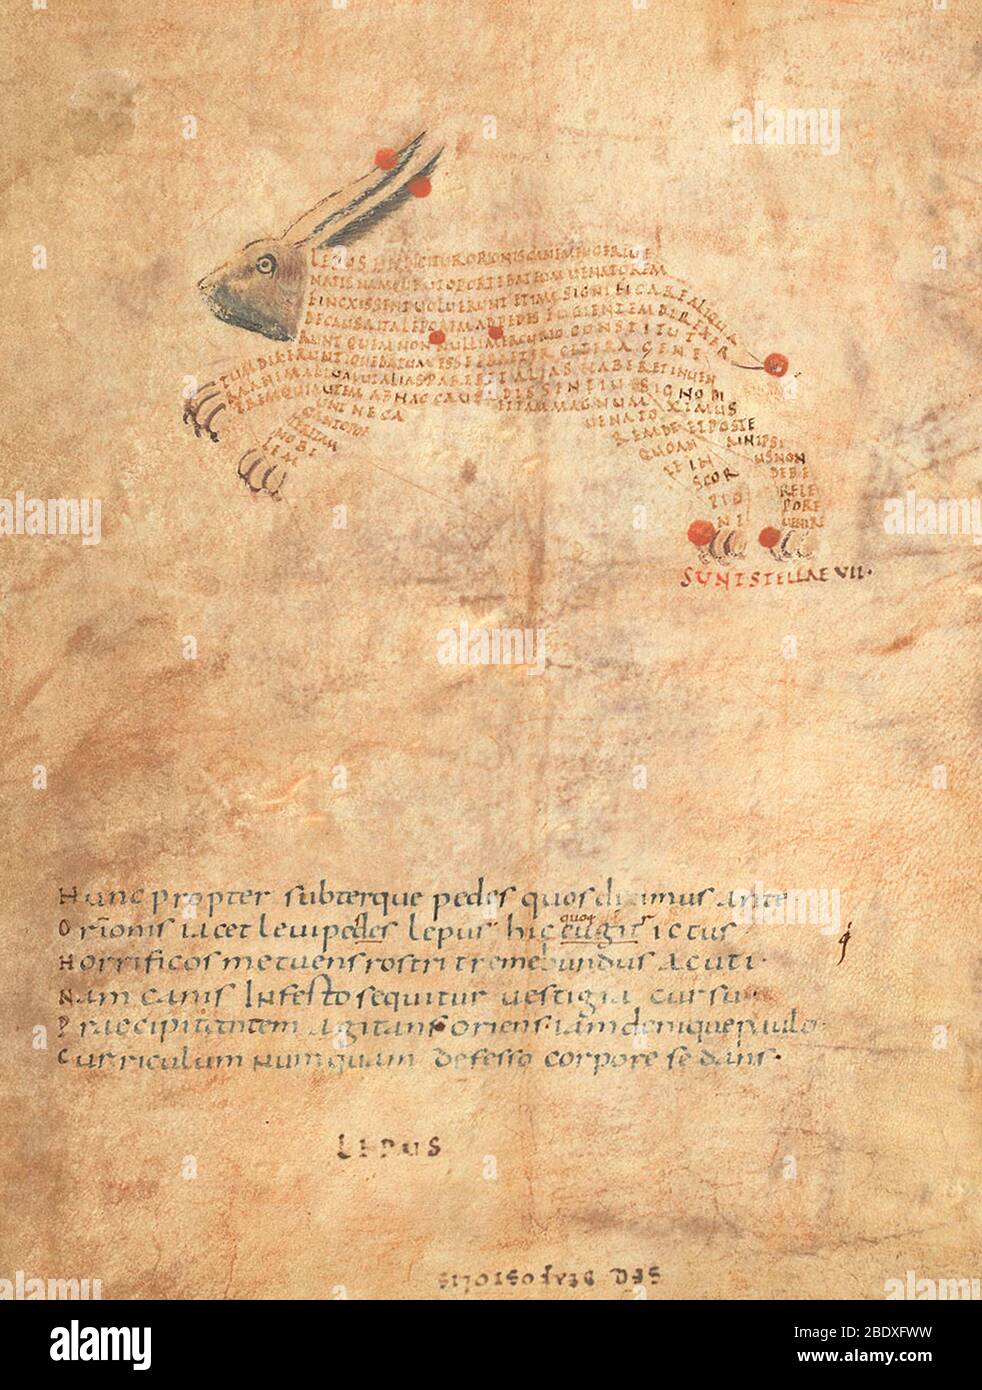 Aratea, Lepus Constellation, 9th Century Stock Photo